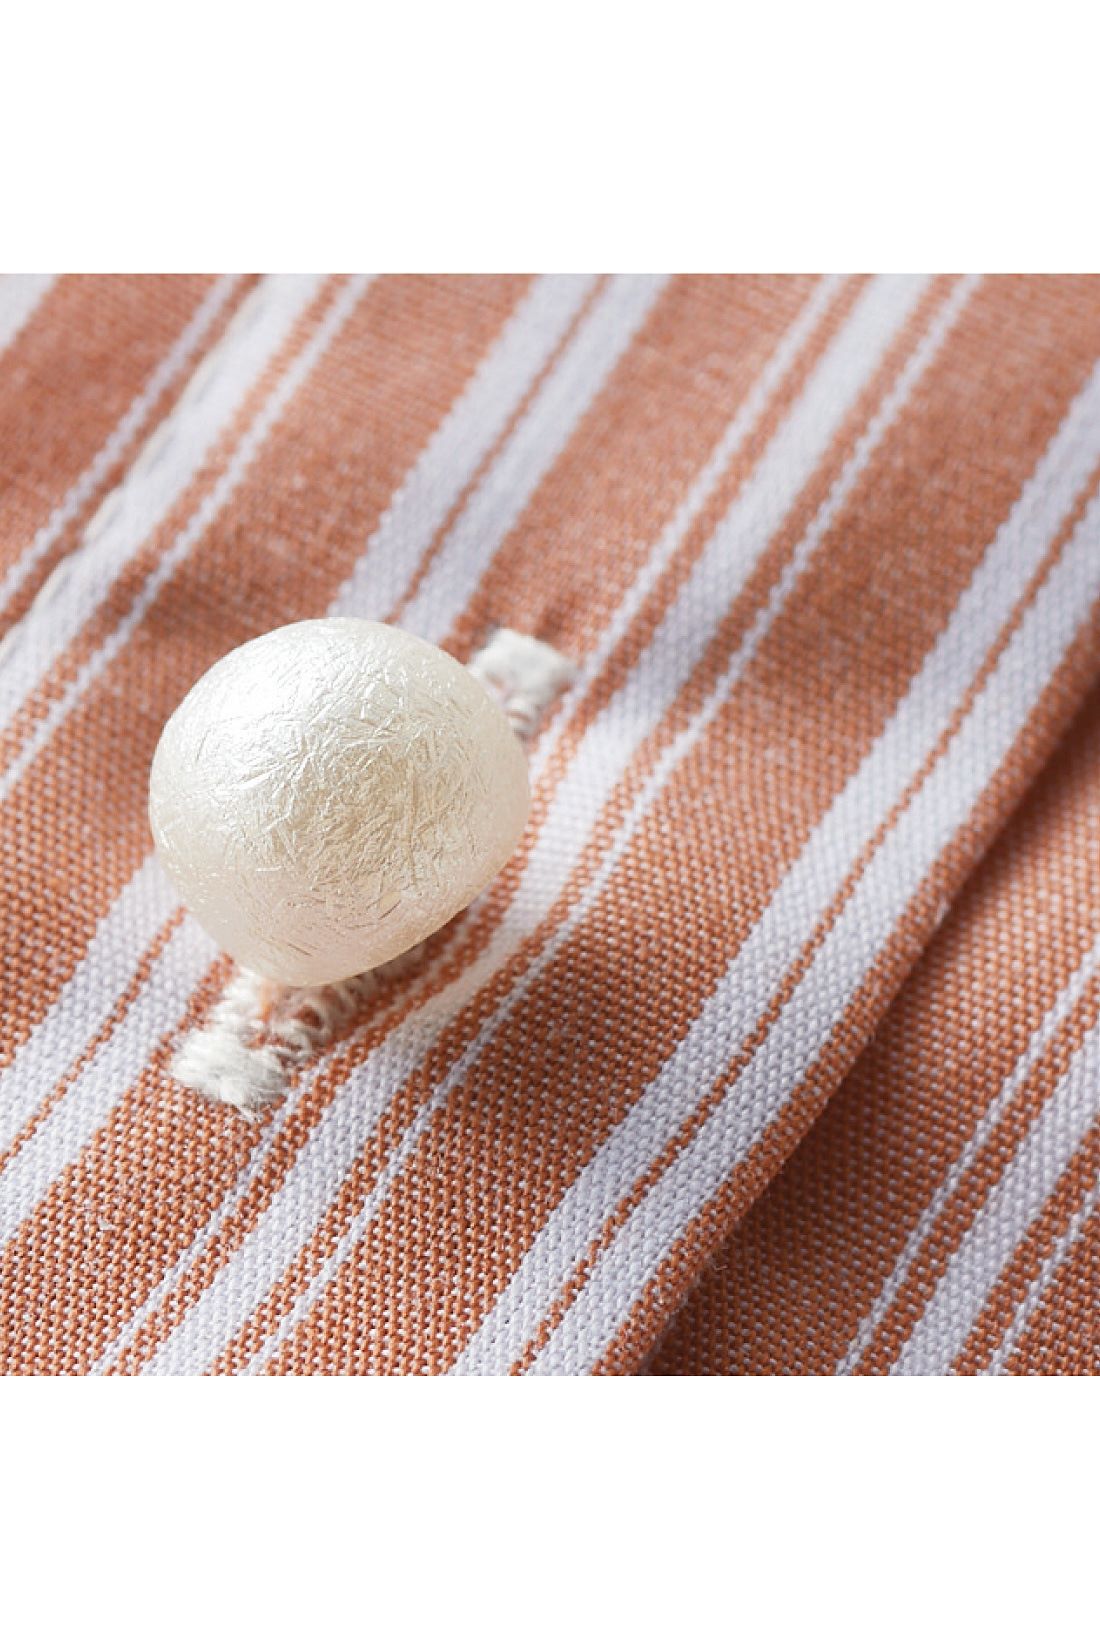 Live in  comfort|リブ イン コンフォート　パール調ボタンで品よくかわいい　後ろギャザーのひらりフレアー　シャツチュニック〈オレンジストライプ〉|しわになりにくいポリエステル・綿混素材のシャツ生地。コットンパール調ボタンで上品に。